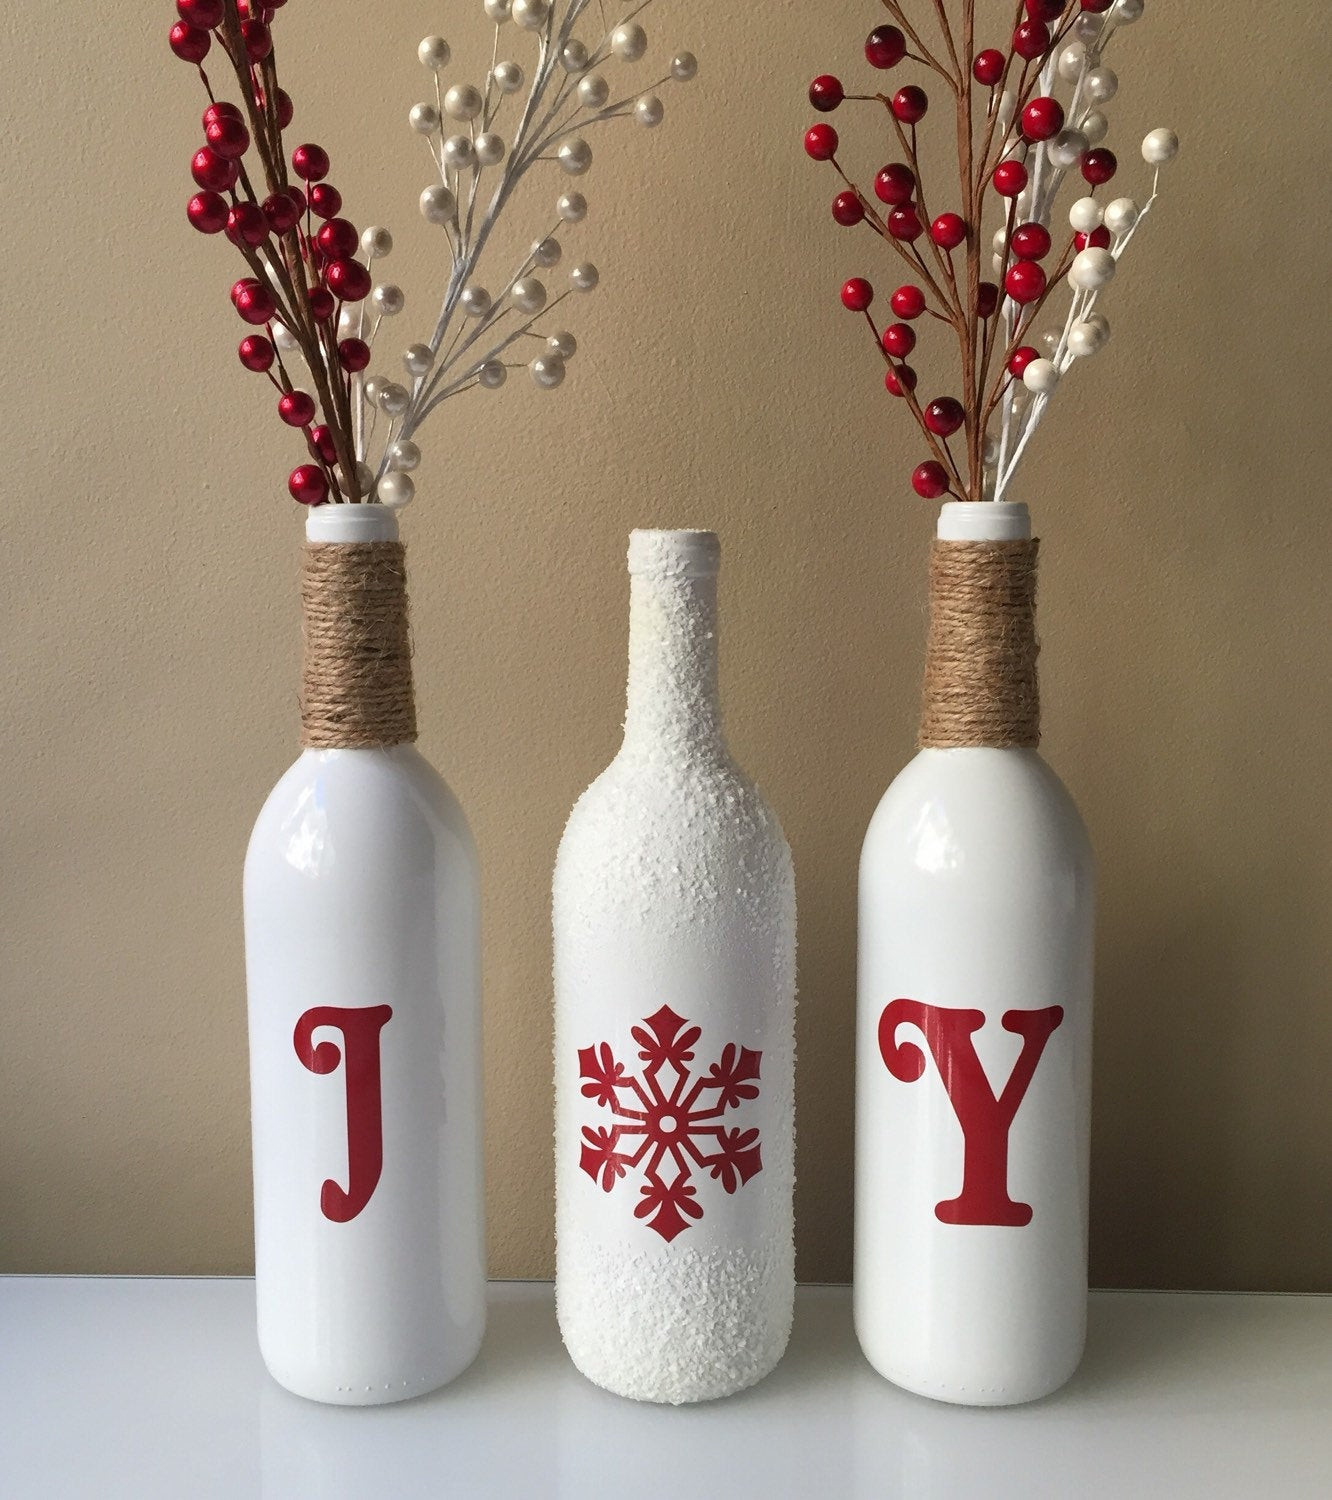 DIY Wine Bottle Christmas Decoration
 Joy Wine Bottles Christmas Decorations Snow Wine Bottles